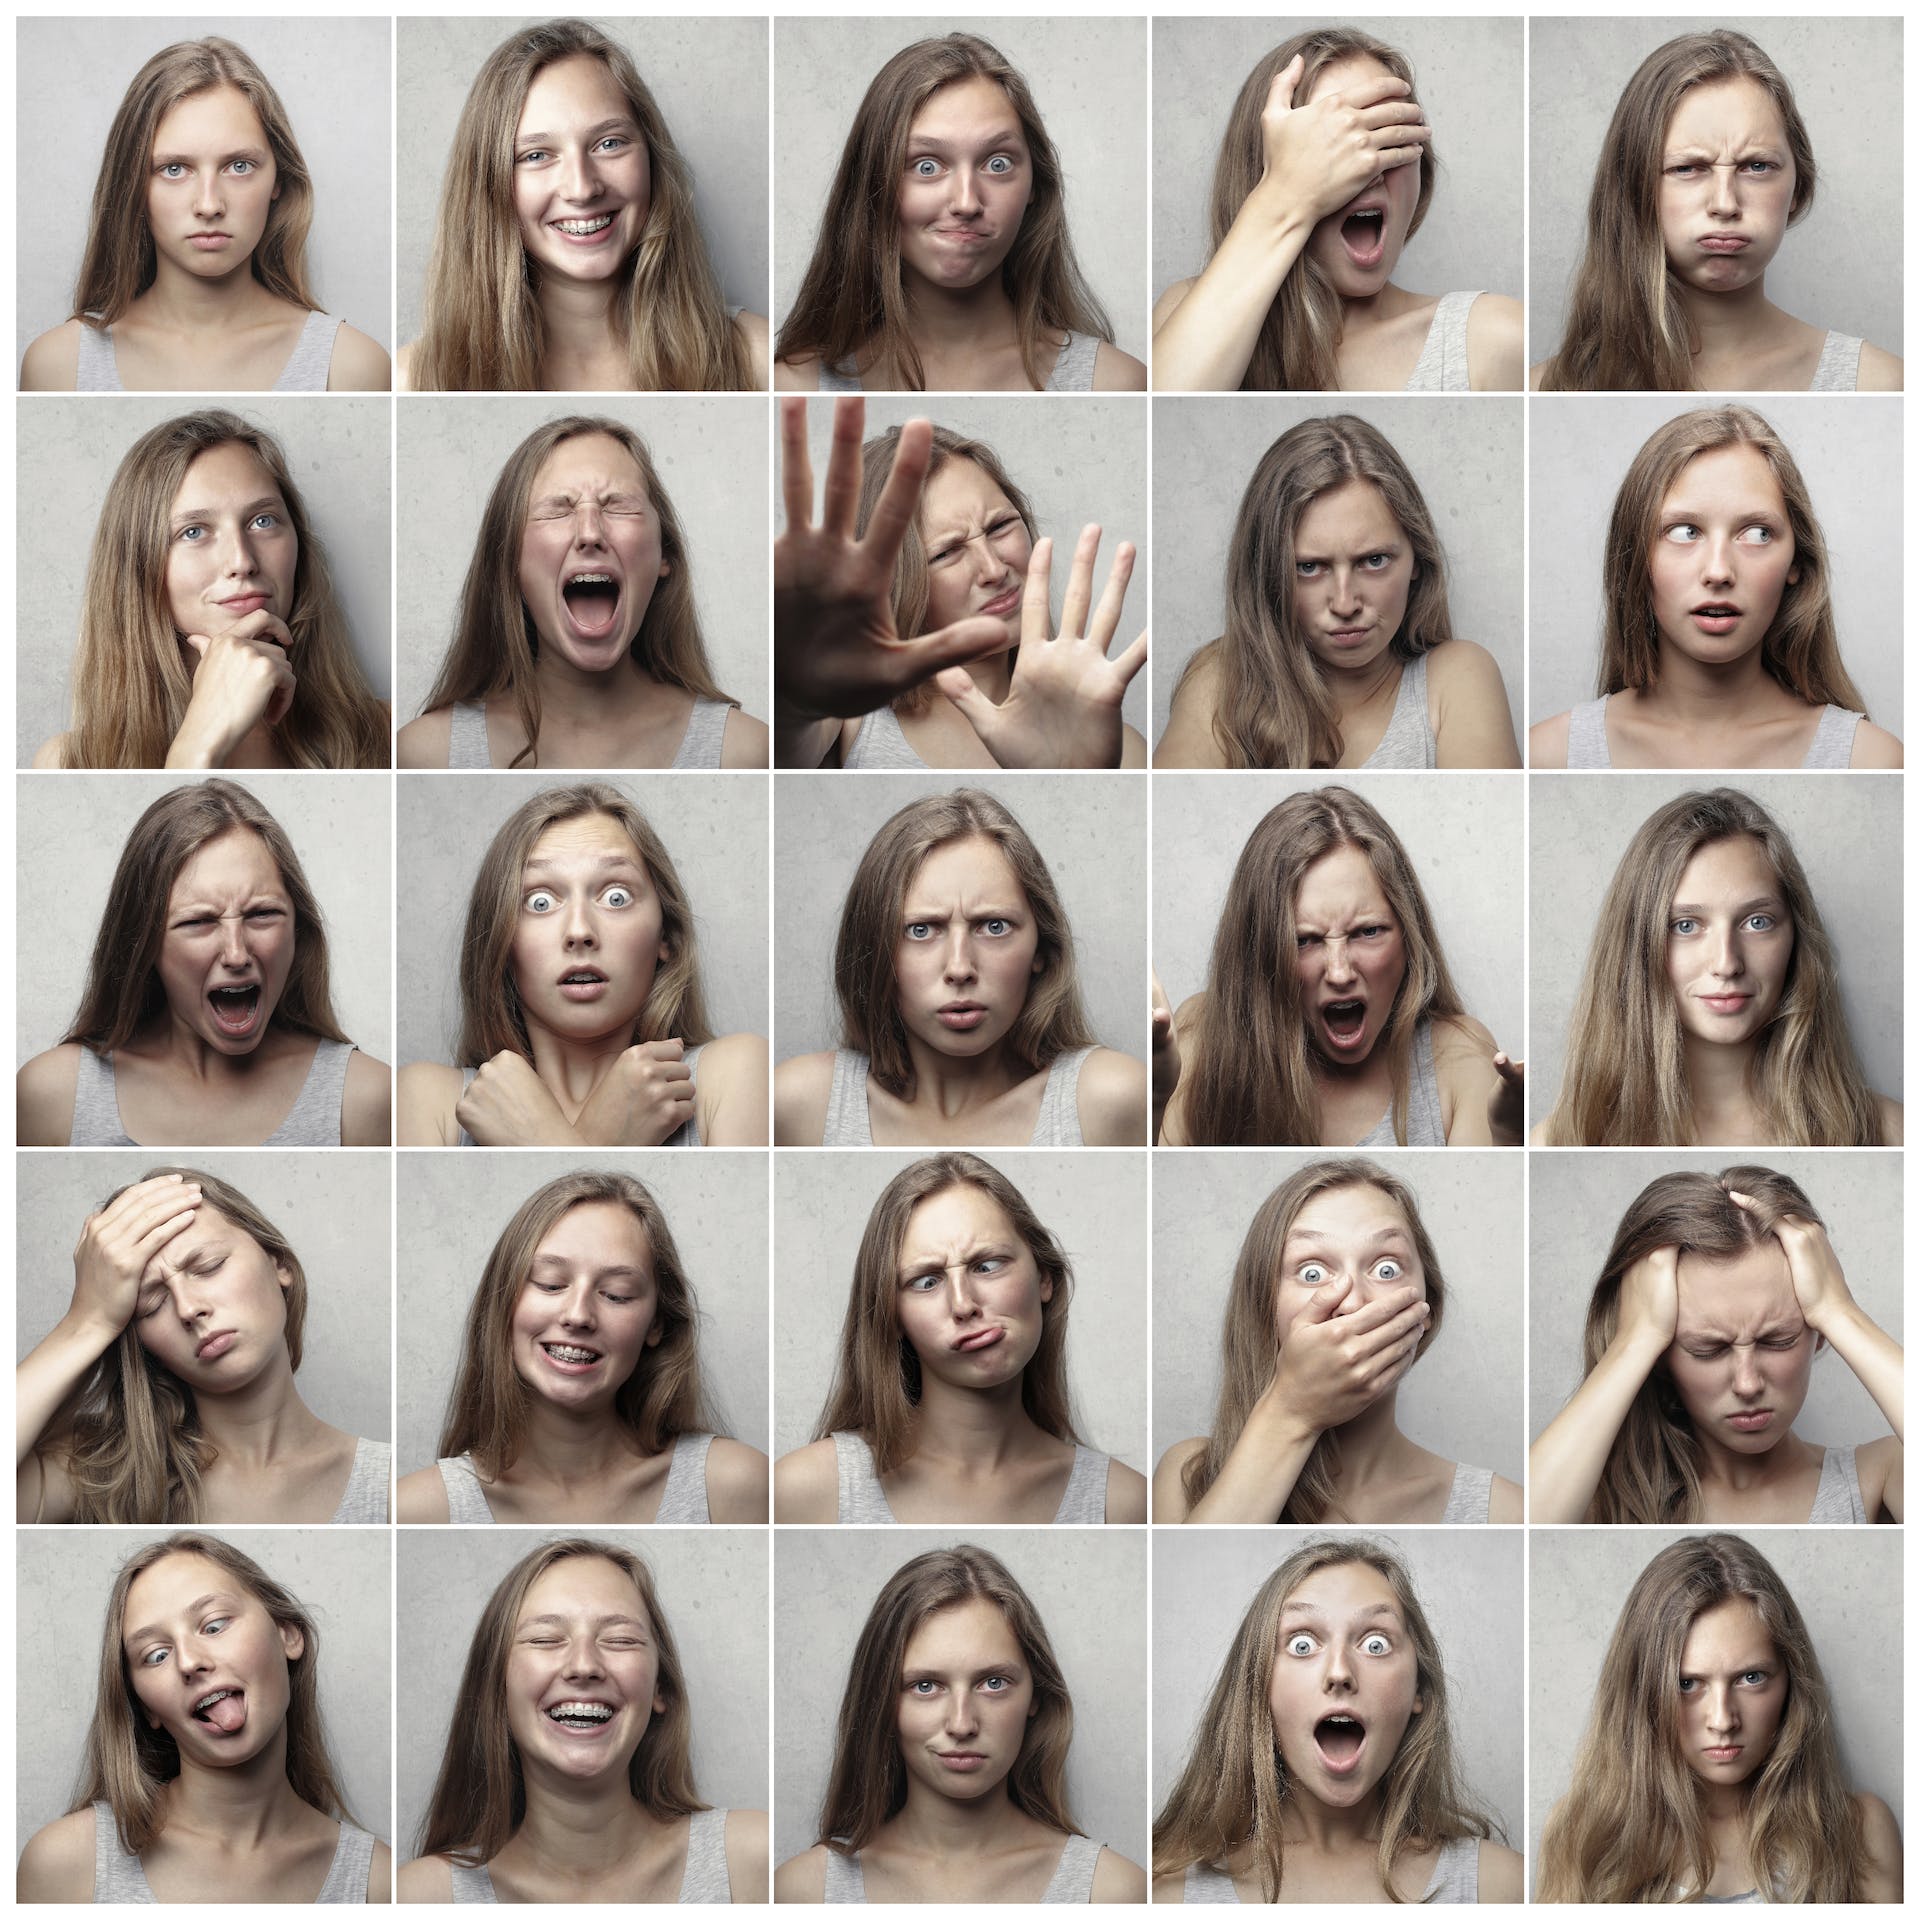 plusieurs images d'une même femme ayant plusieurs émotions différentes